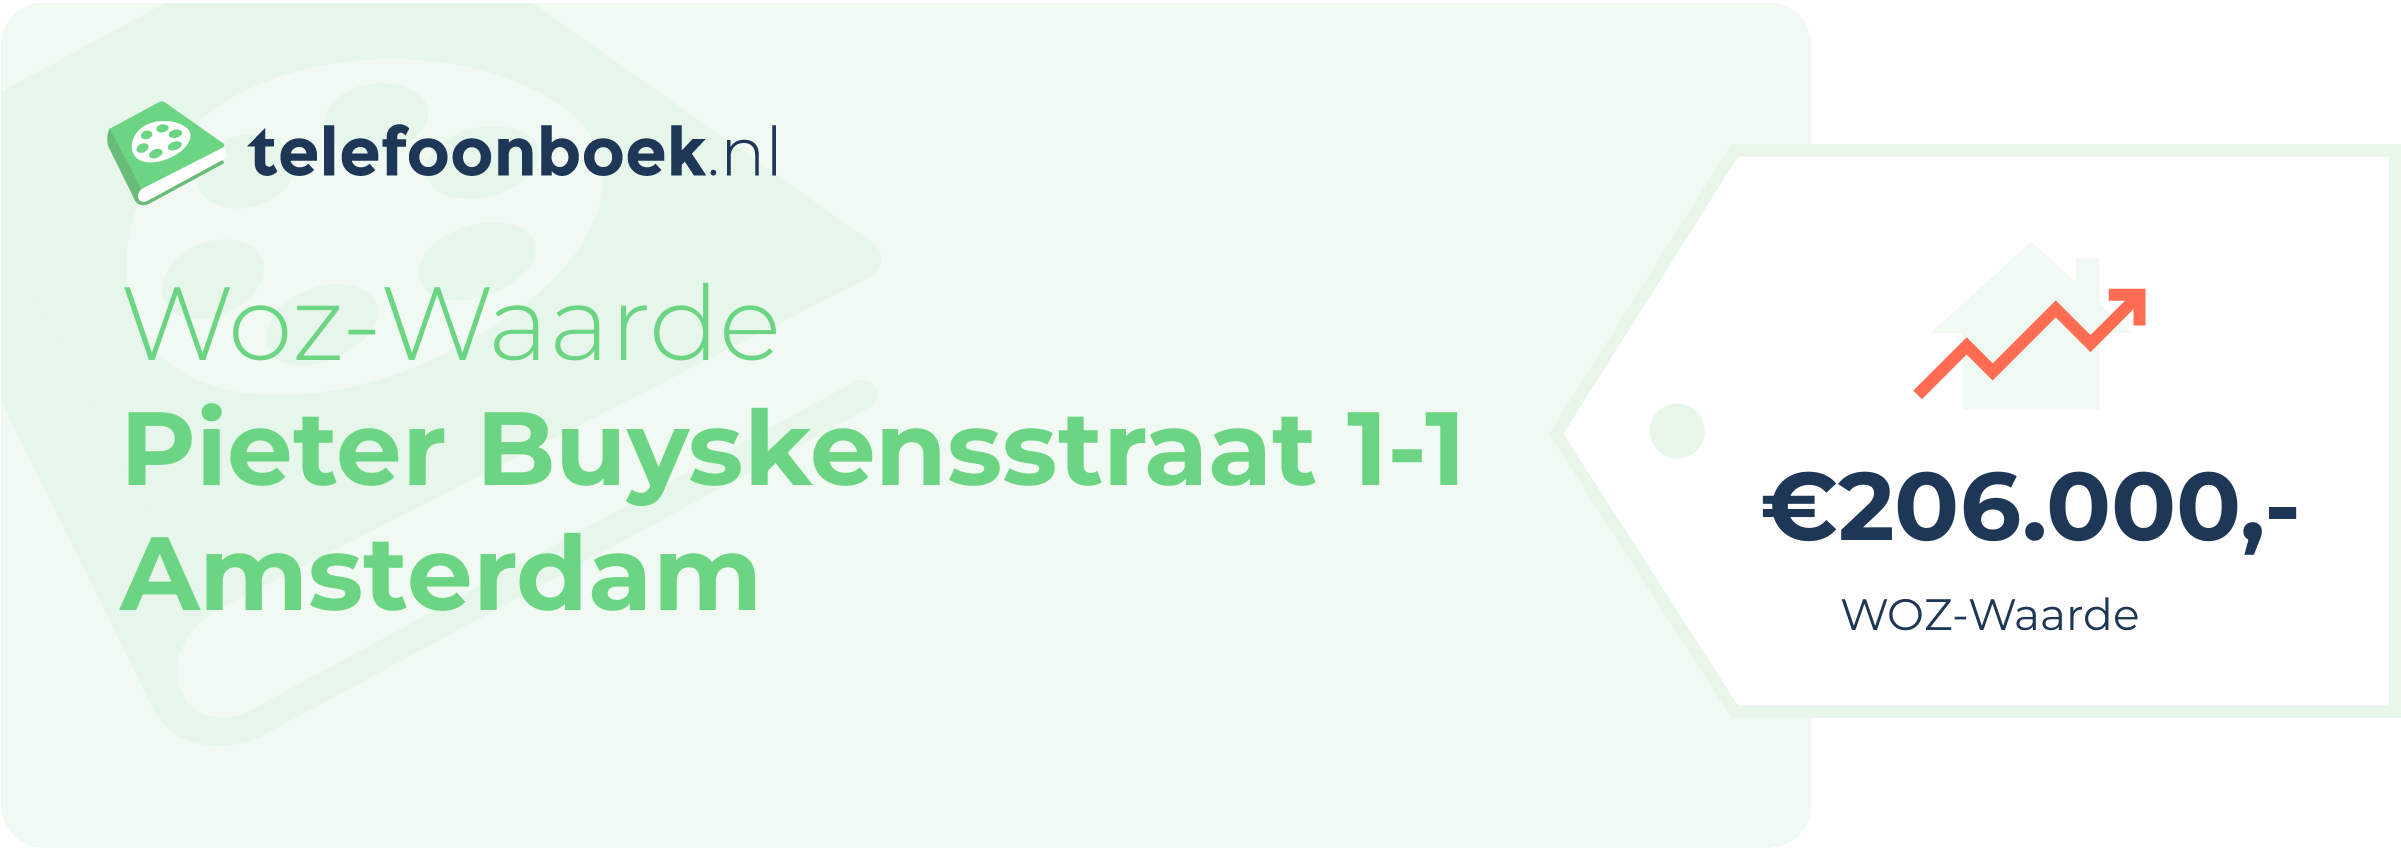 WOZ-waarde Pieter Buyskensstraat 1-1 Amsterdam